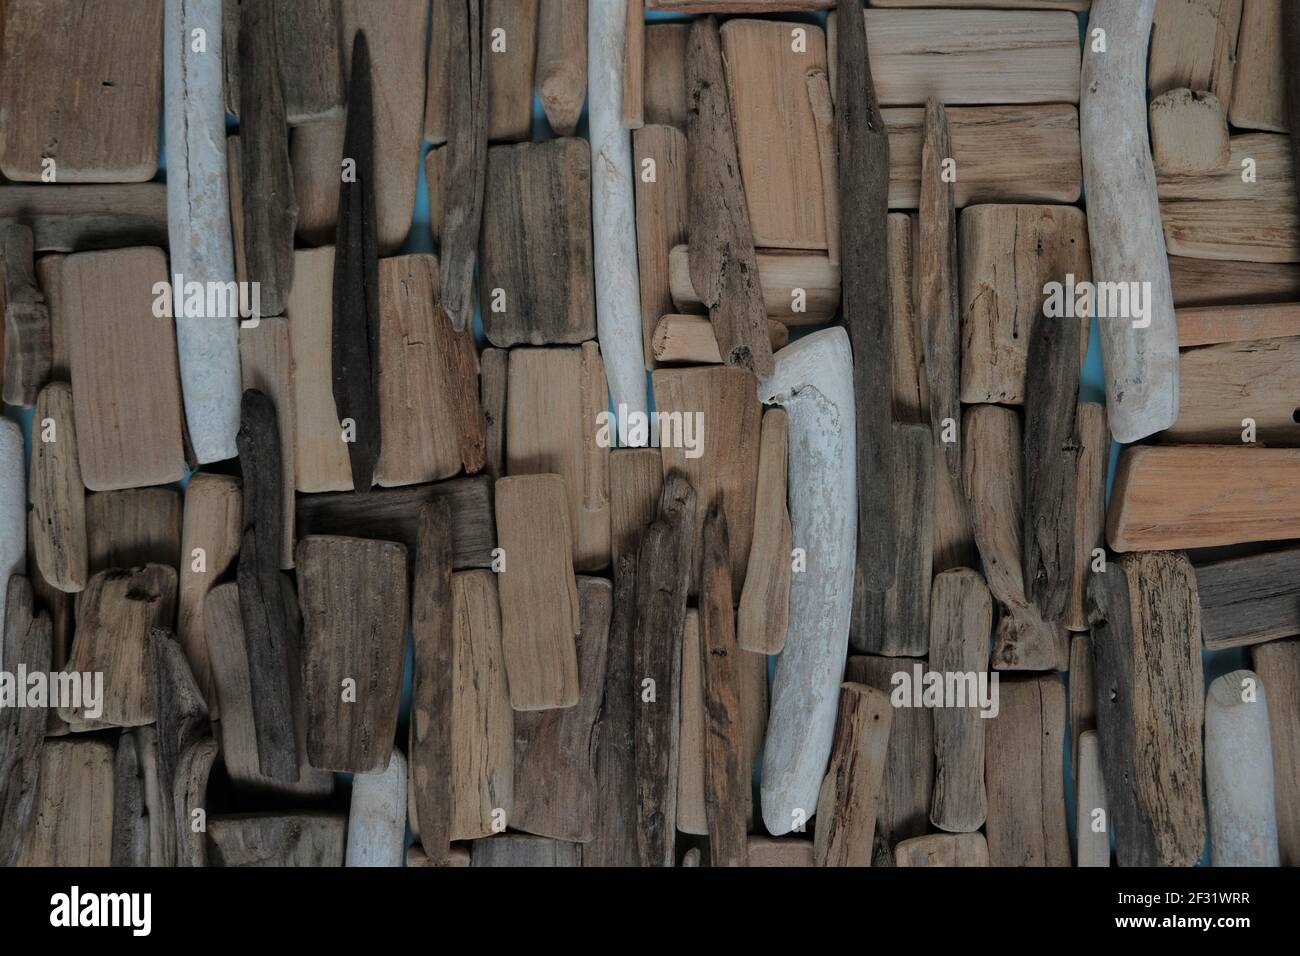 Driftwood wall.beach fond de bois flotté.ensemble de bois flotté gris et brun marins.panneau décoratif Dans un style marin.décor de bois flotté style nautique Banque D'Images